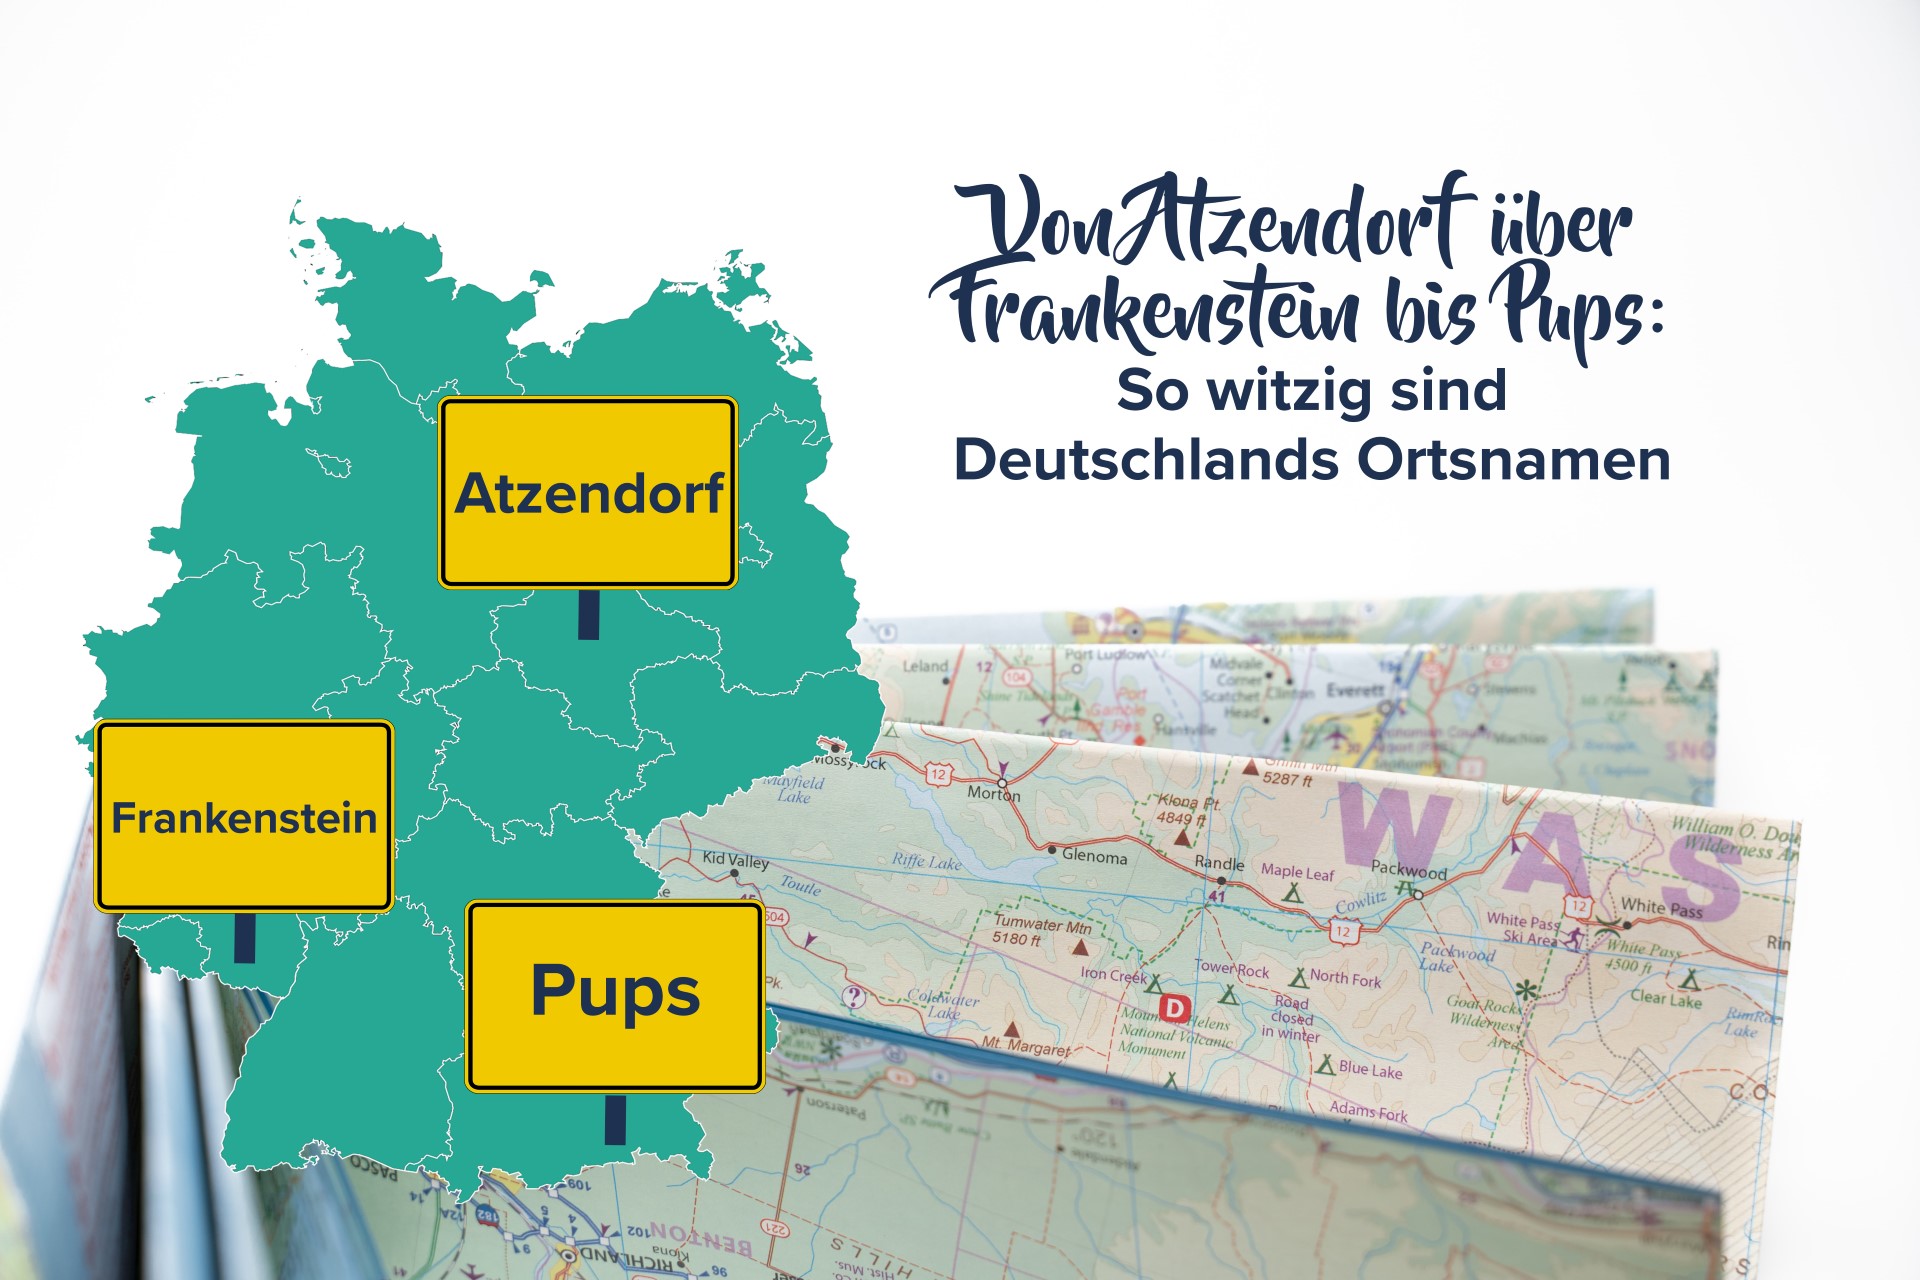 Von Atzendorf über Frankenstein bis Pups: witzige Ortsnamen in Deutschland